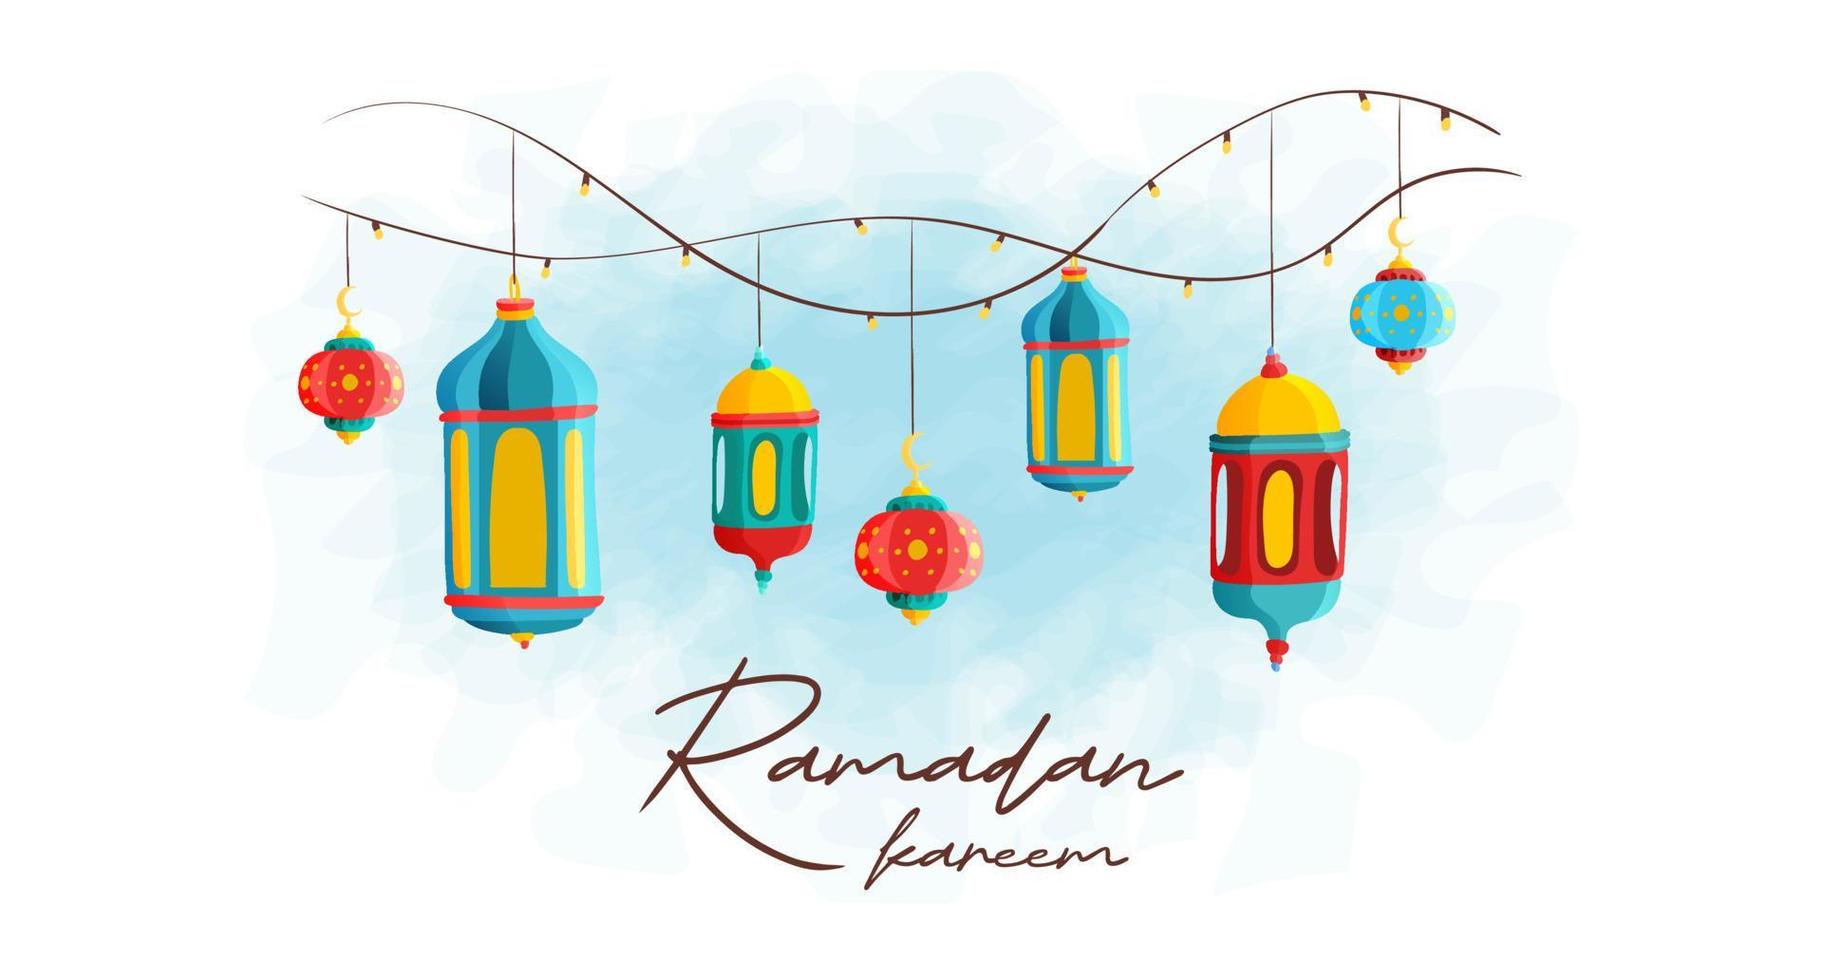 Ramadan kareem islamique saint mois salutation lanterne main tiré coloré illustration vecteur